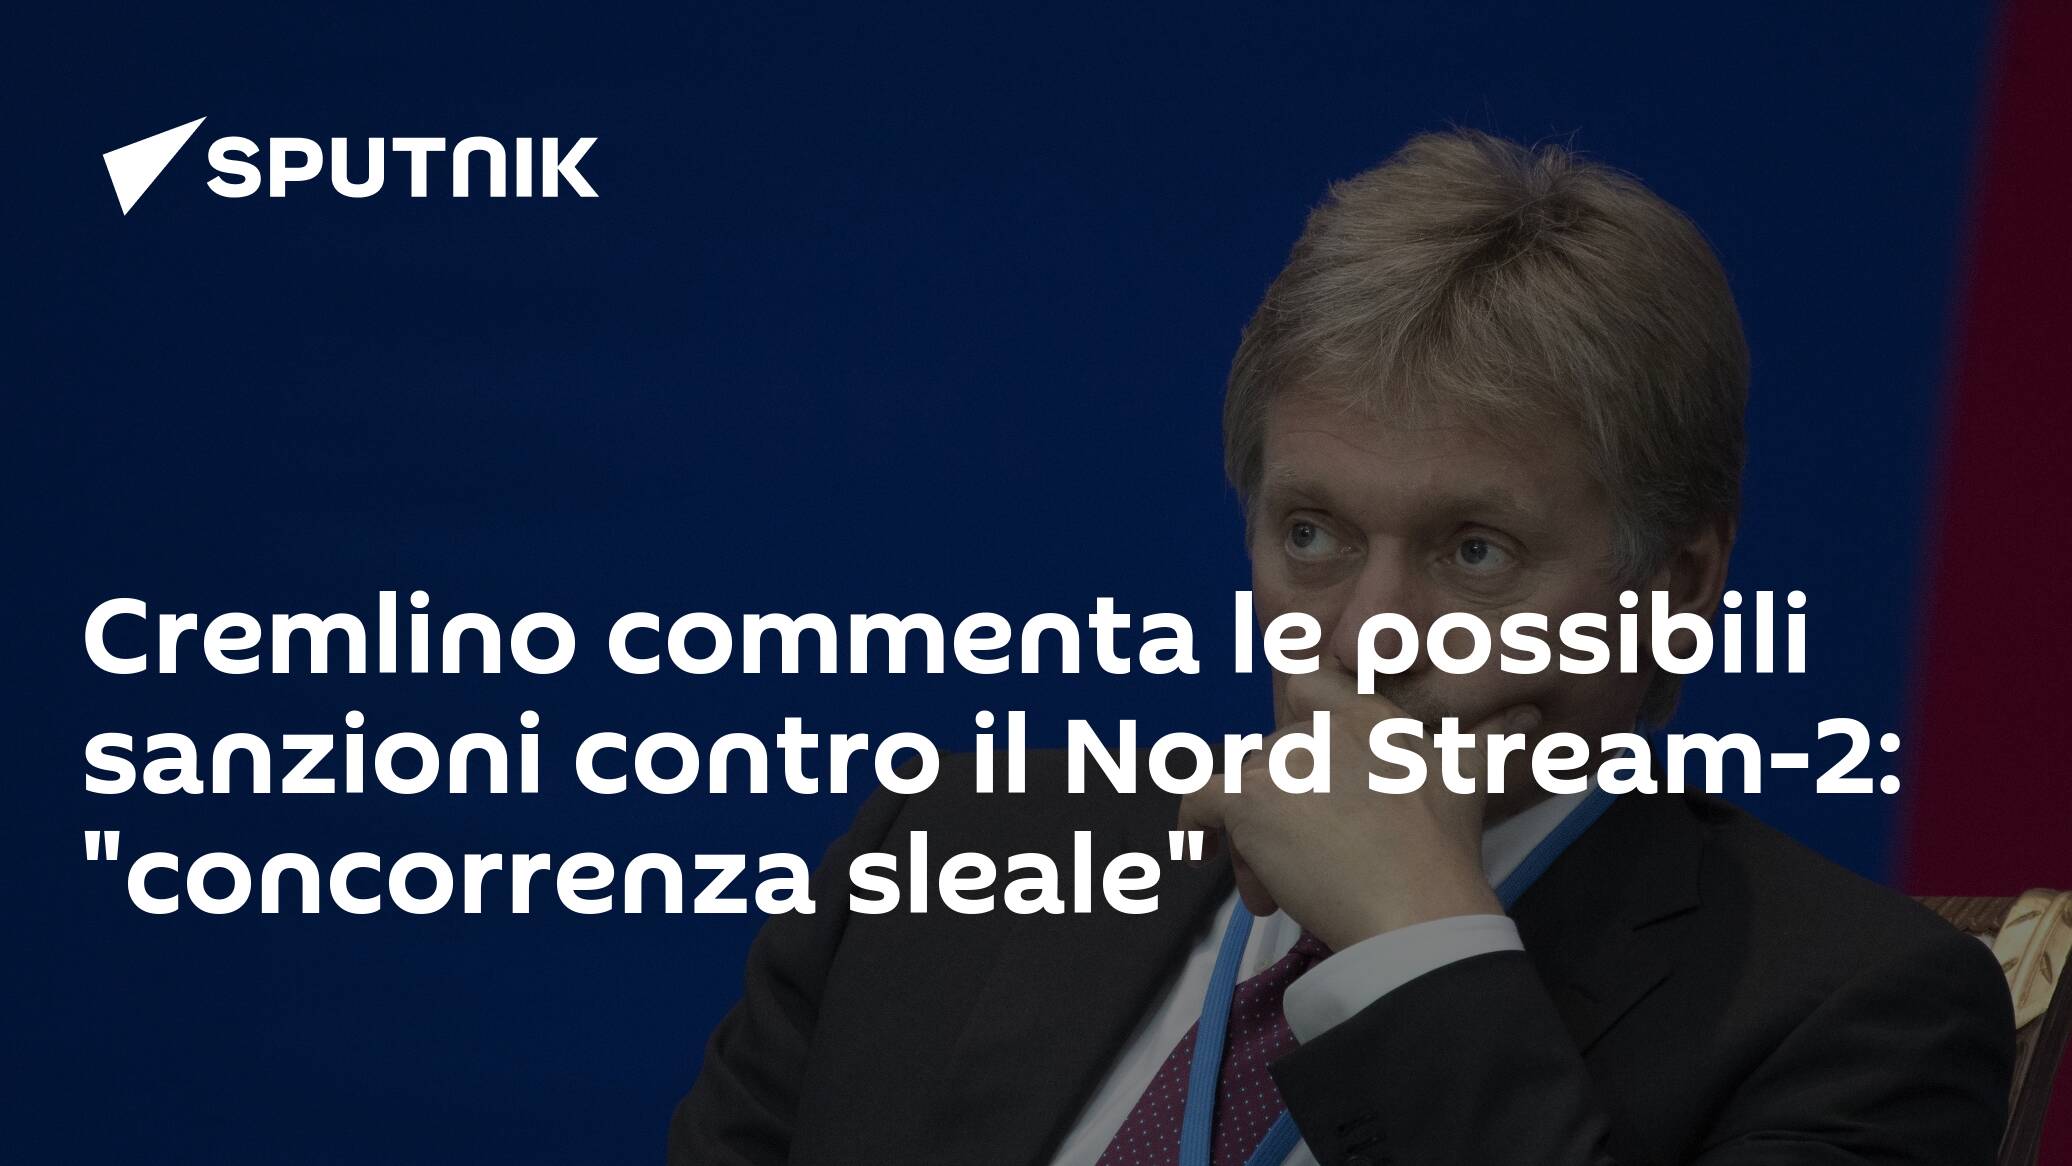 Cremlino commenta le possibili sanzioni contro il Nord Stream-2: “concorrenza sleale”